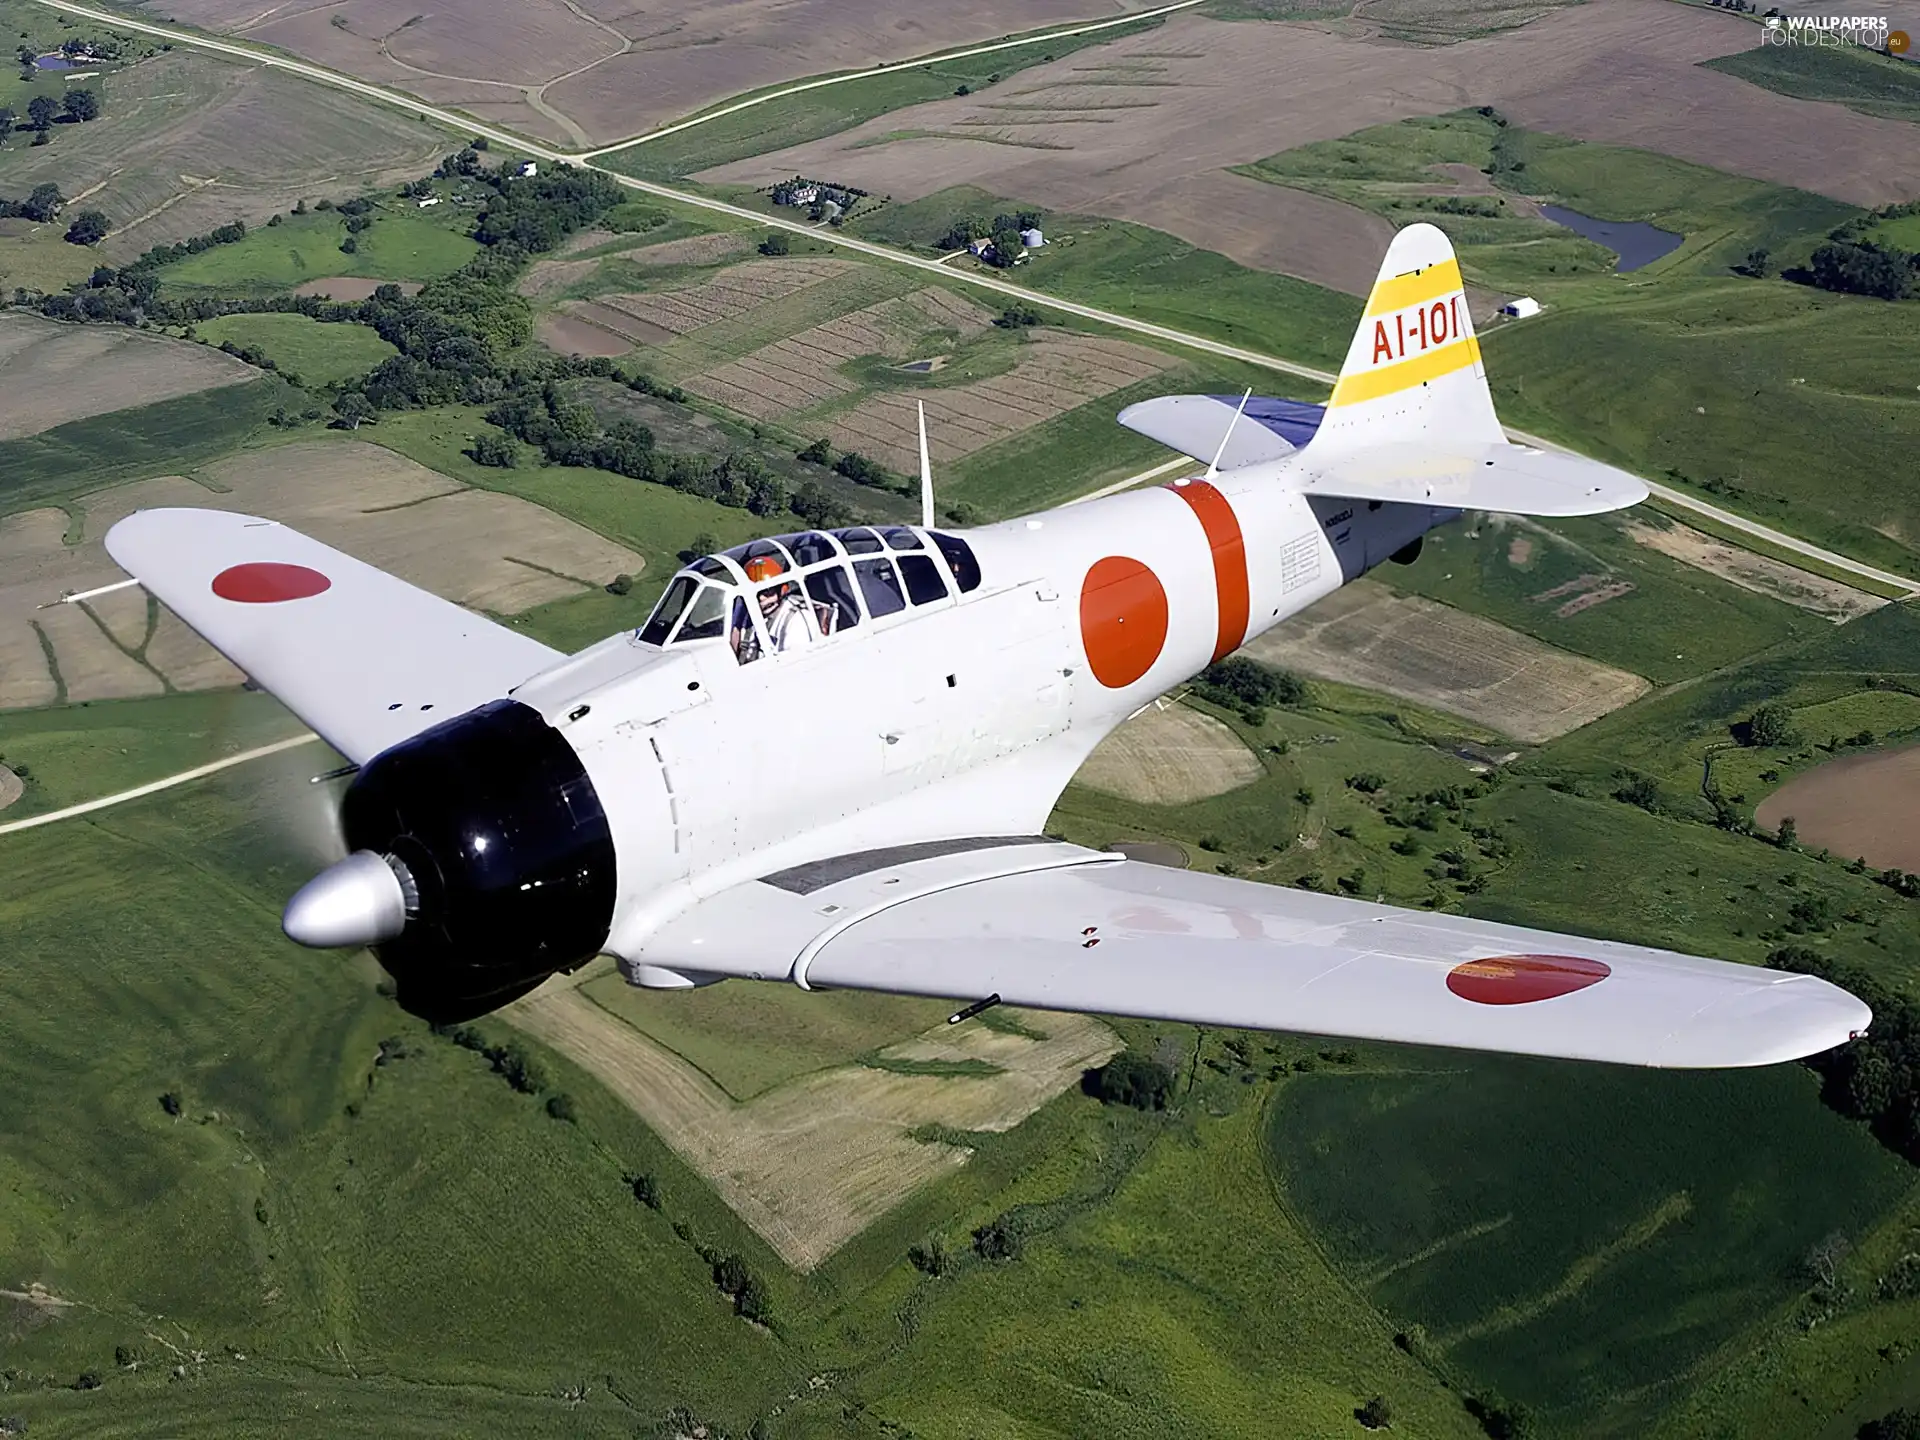 plane, Mitsubishi A6M Zero